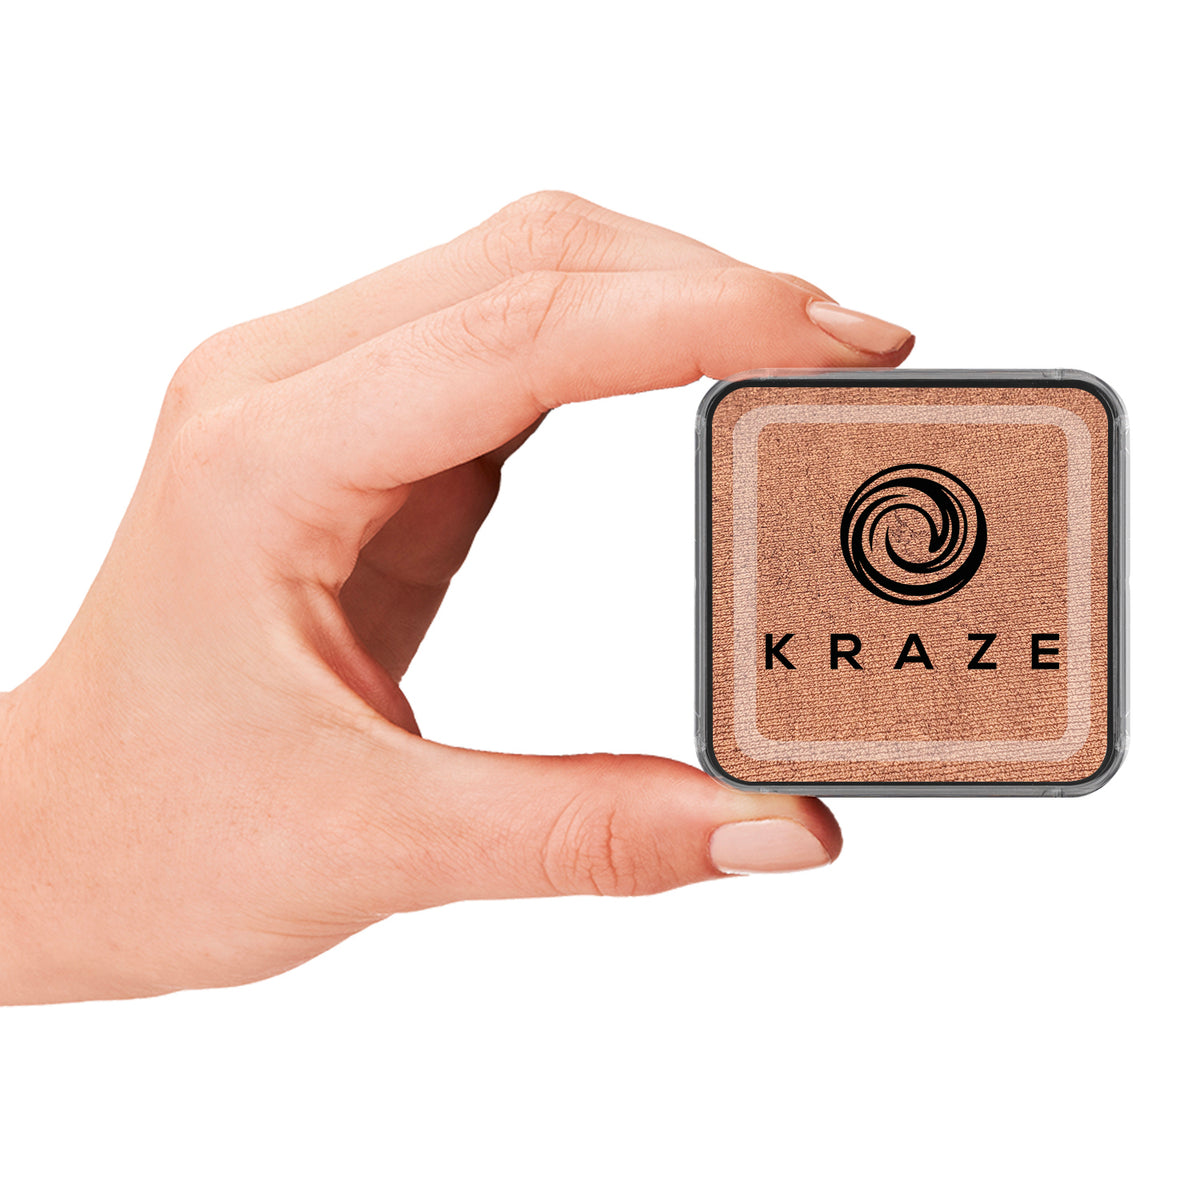 Kraze Square - Metallic Copper (25 gm)